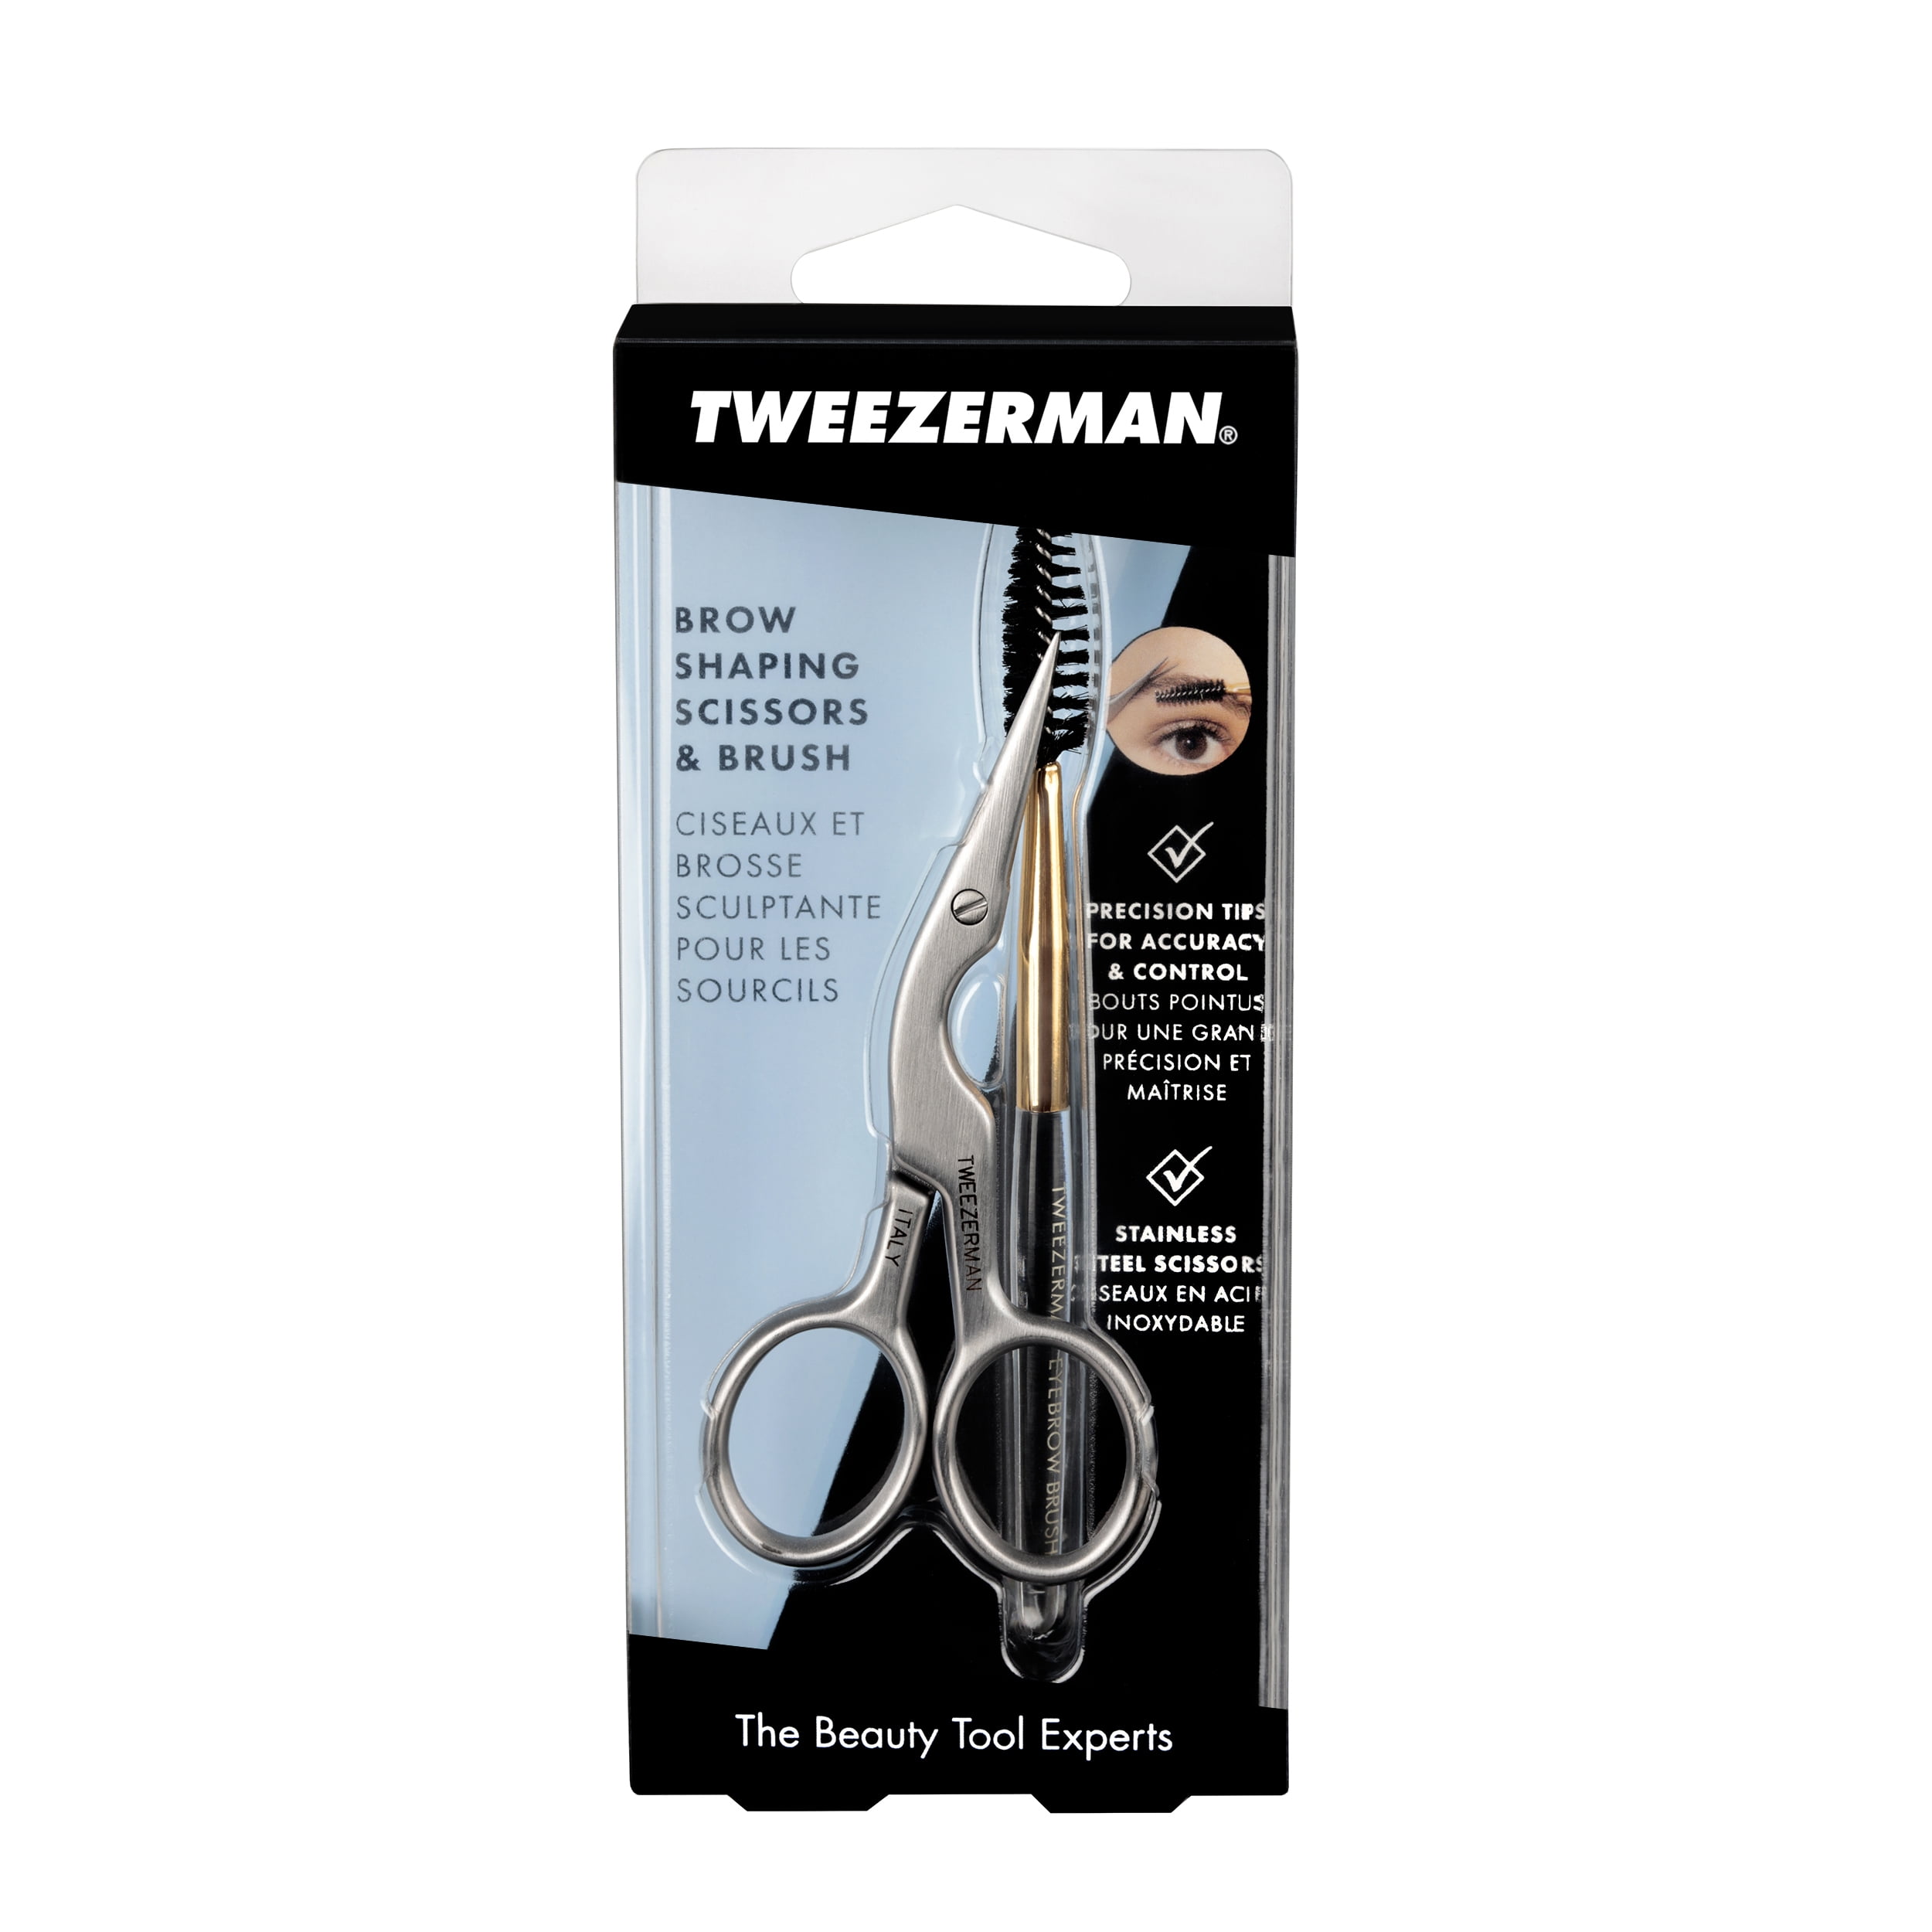 Tweezerman Brow Scissors Brush and